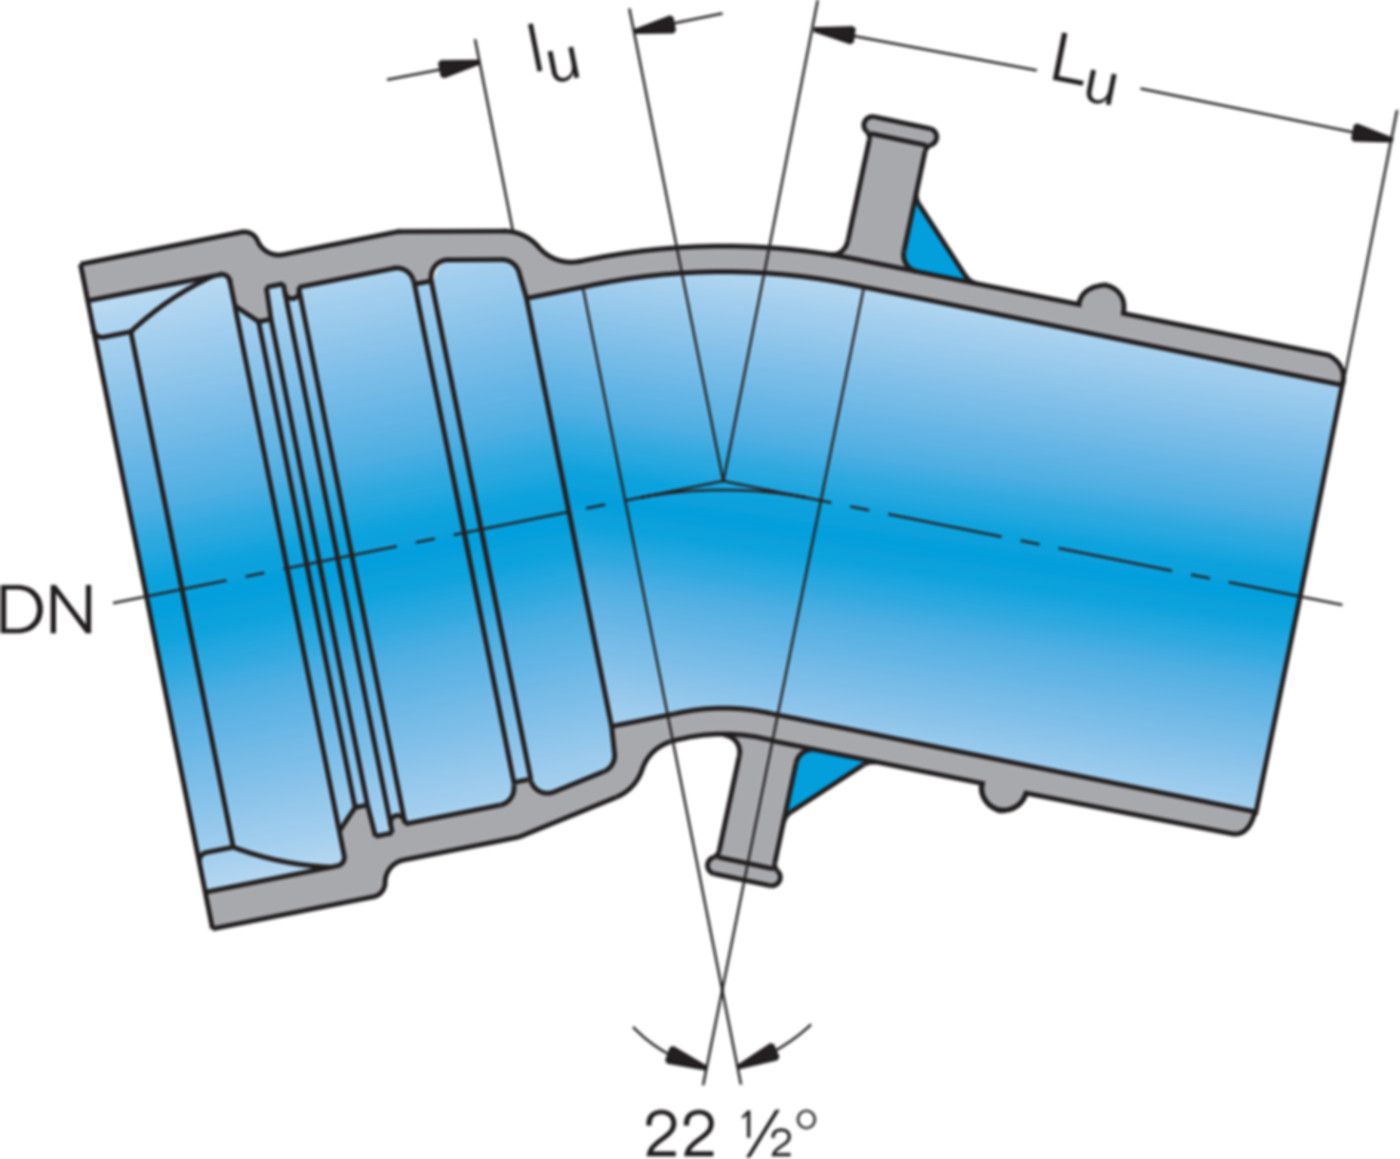 1-Muffe-Bogen MK 22° System BLS DN 200 - Frischhut Steckmuffenformstücke